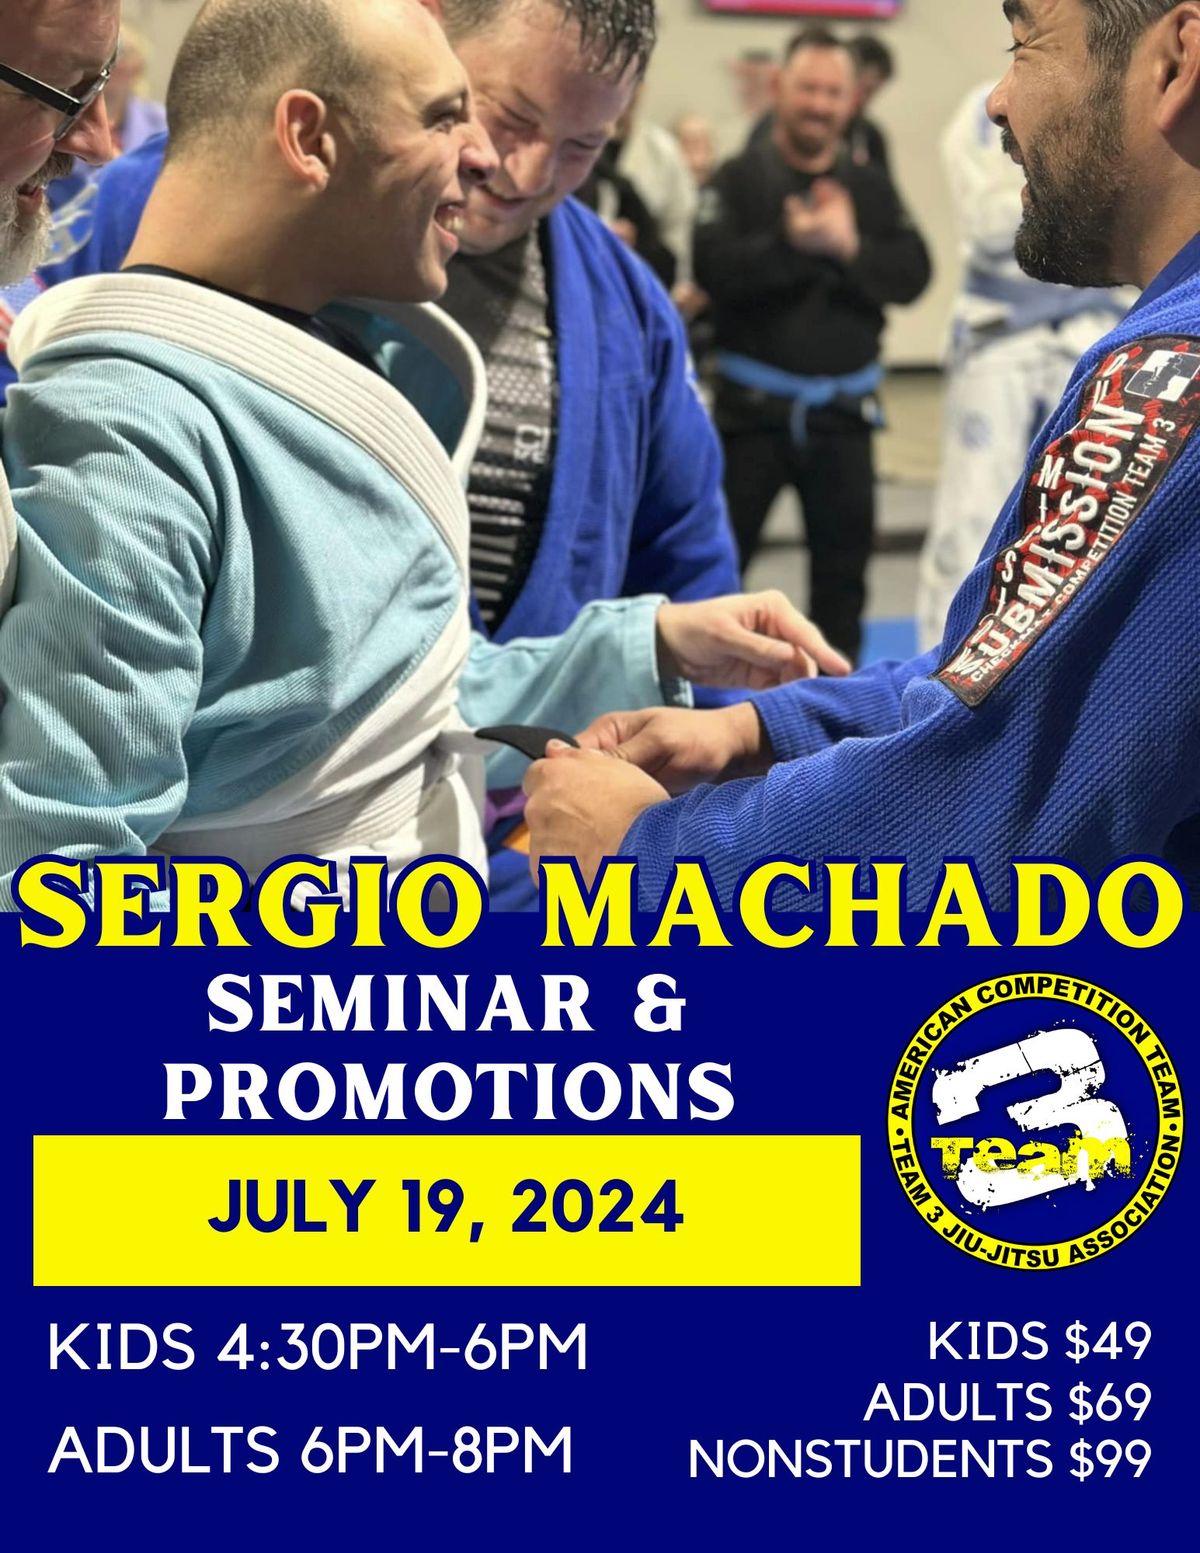 Sergio Machado Seminar & Promotions